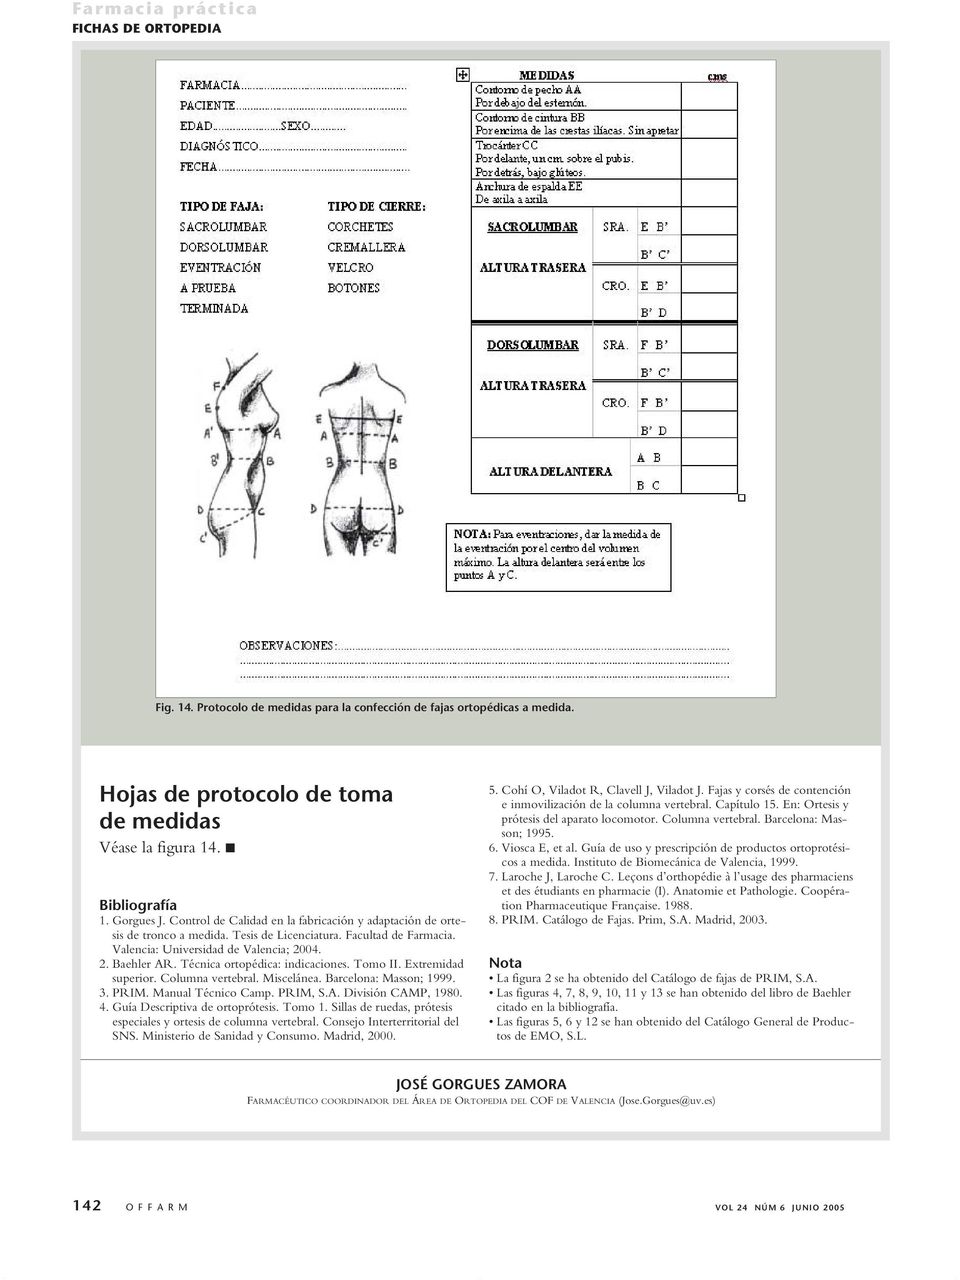 Técnica ortopédica: indicaciones. Tomo II. Extremidad superior. Columna vertebral. Miscelánea. Barcelona: Masson; 1999. 3. PRIM. Manual Técnico Camp. PRIM, S.A. División CAMP, 1980. 4.